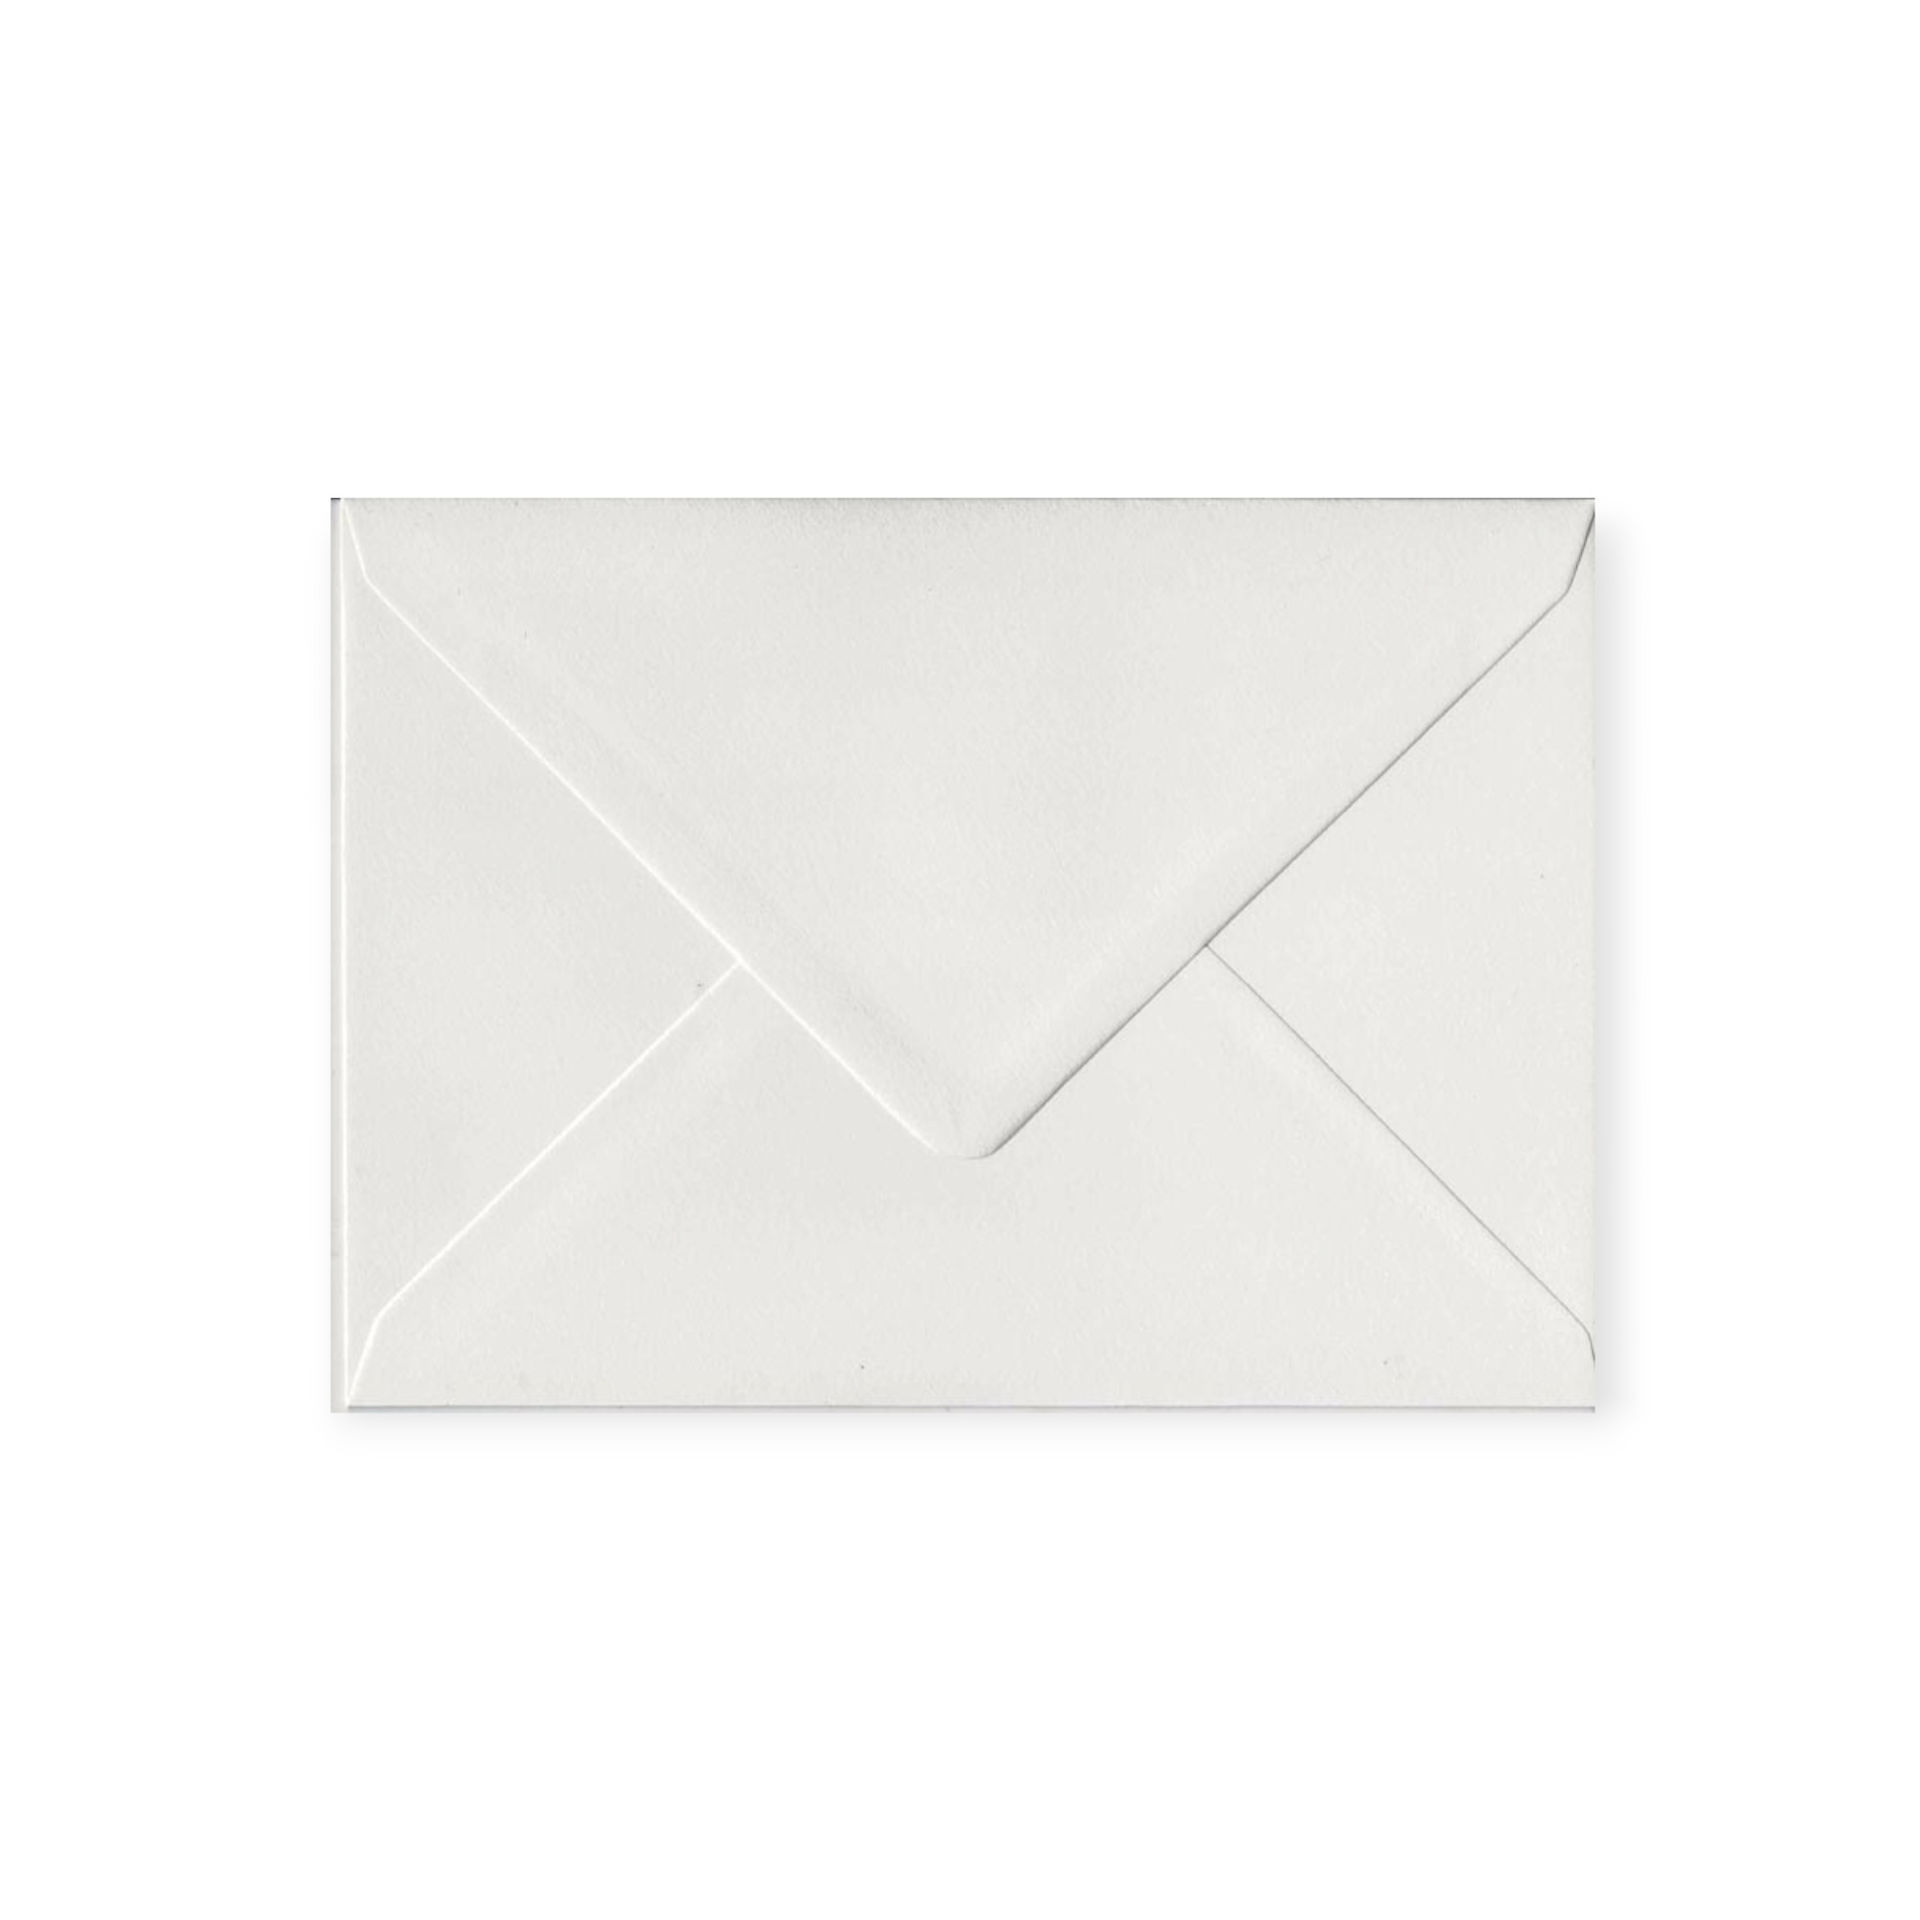 A6 Envelope White